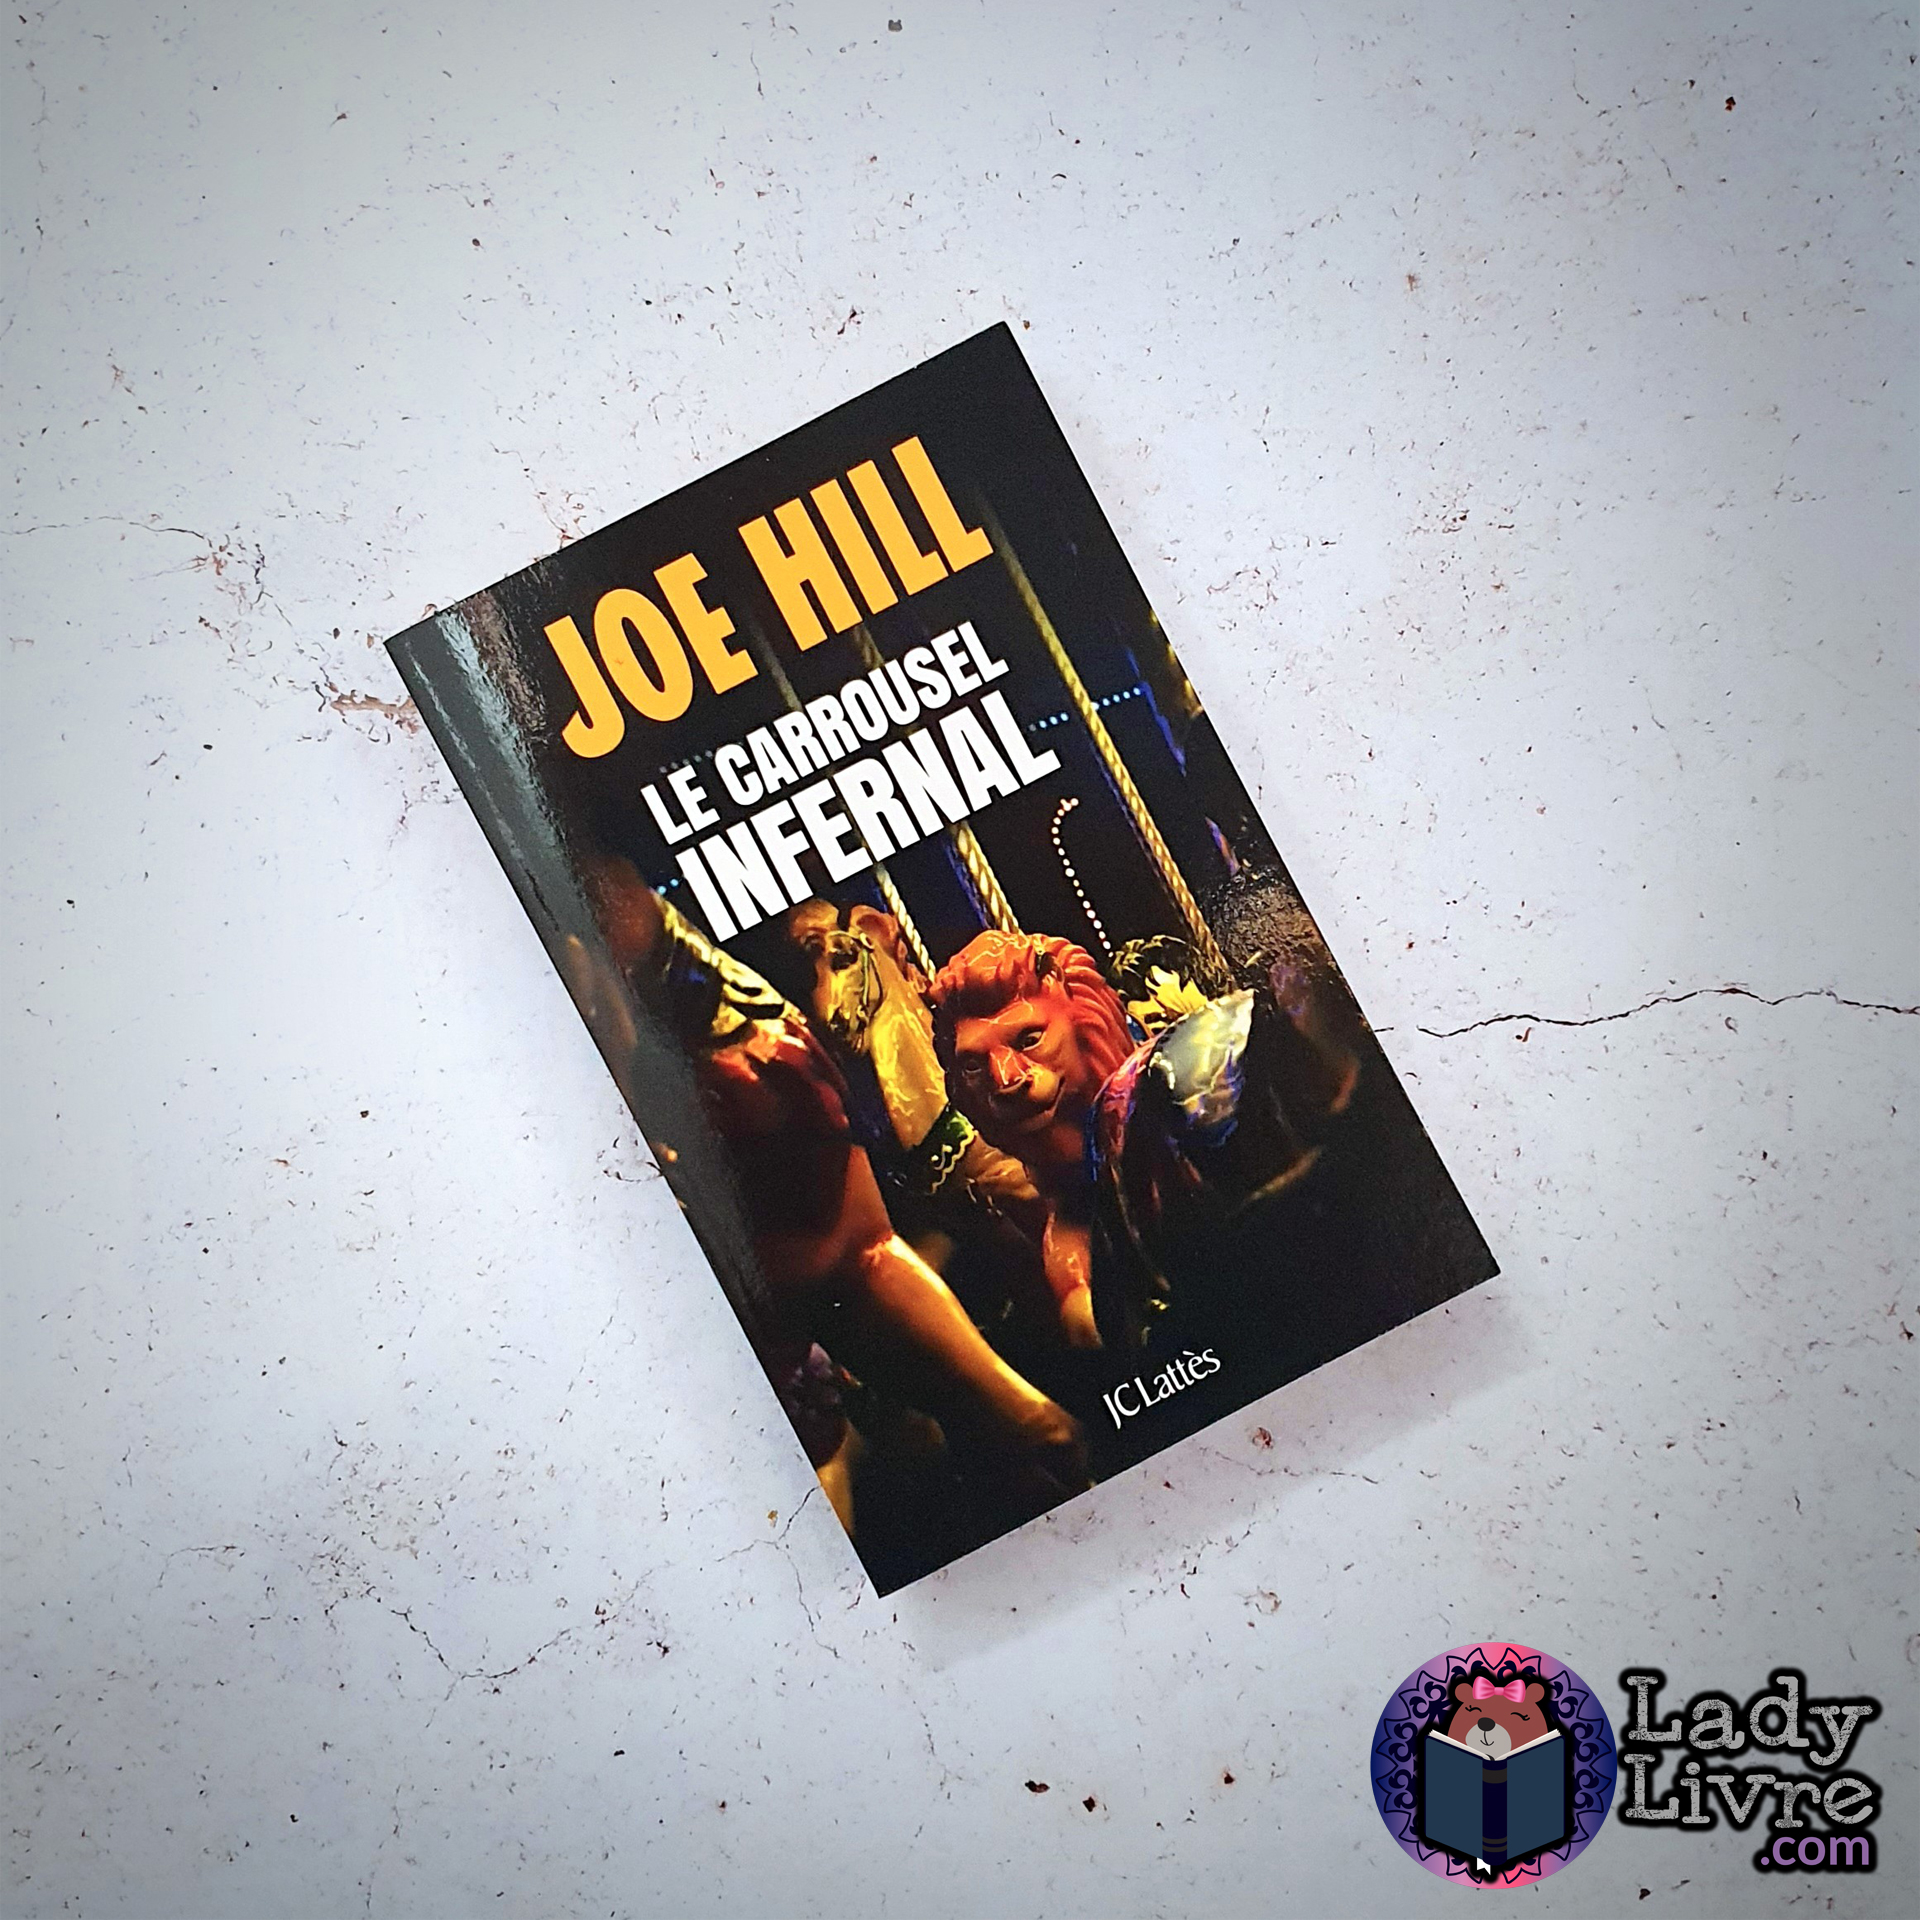 Le carrousel infernal - Joe Hill